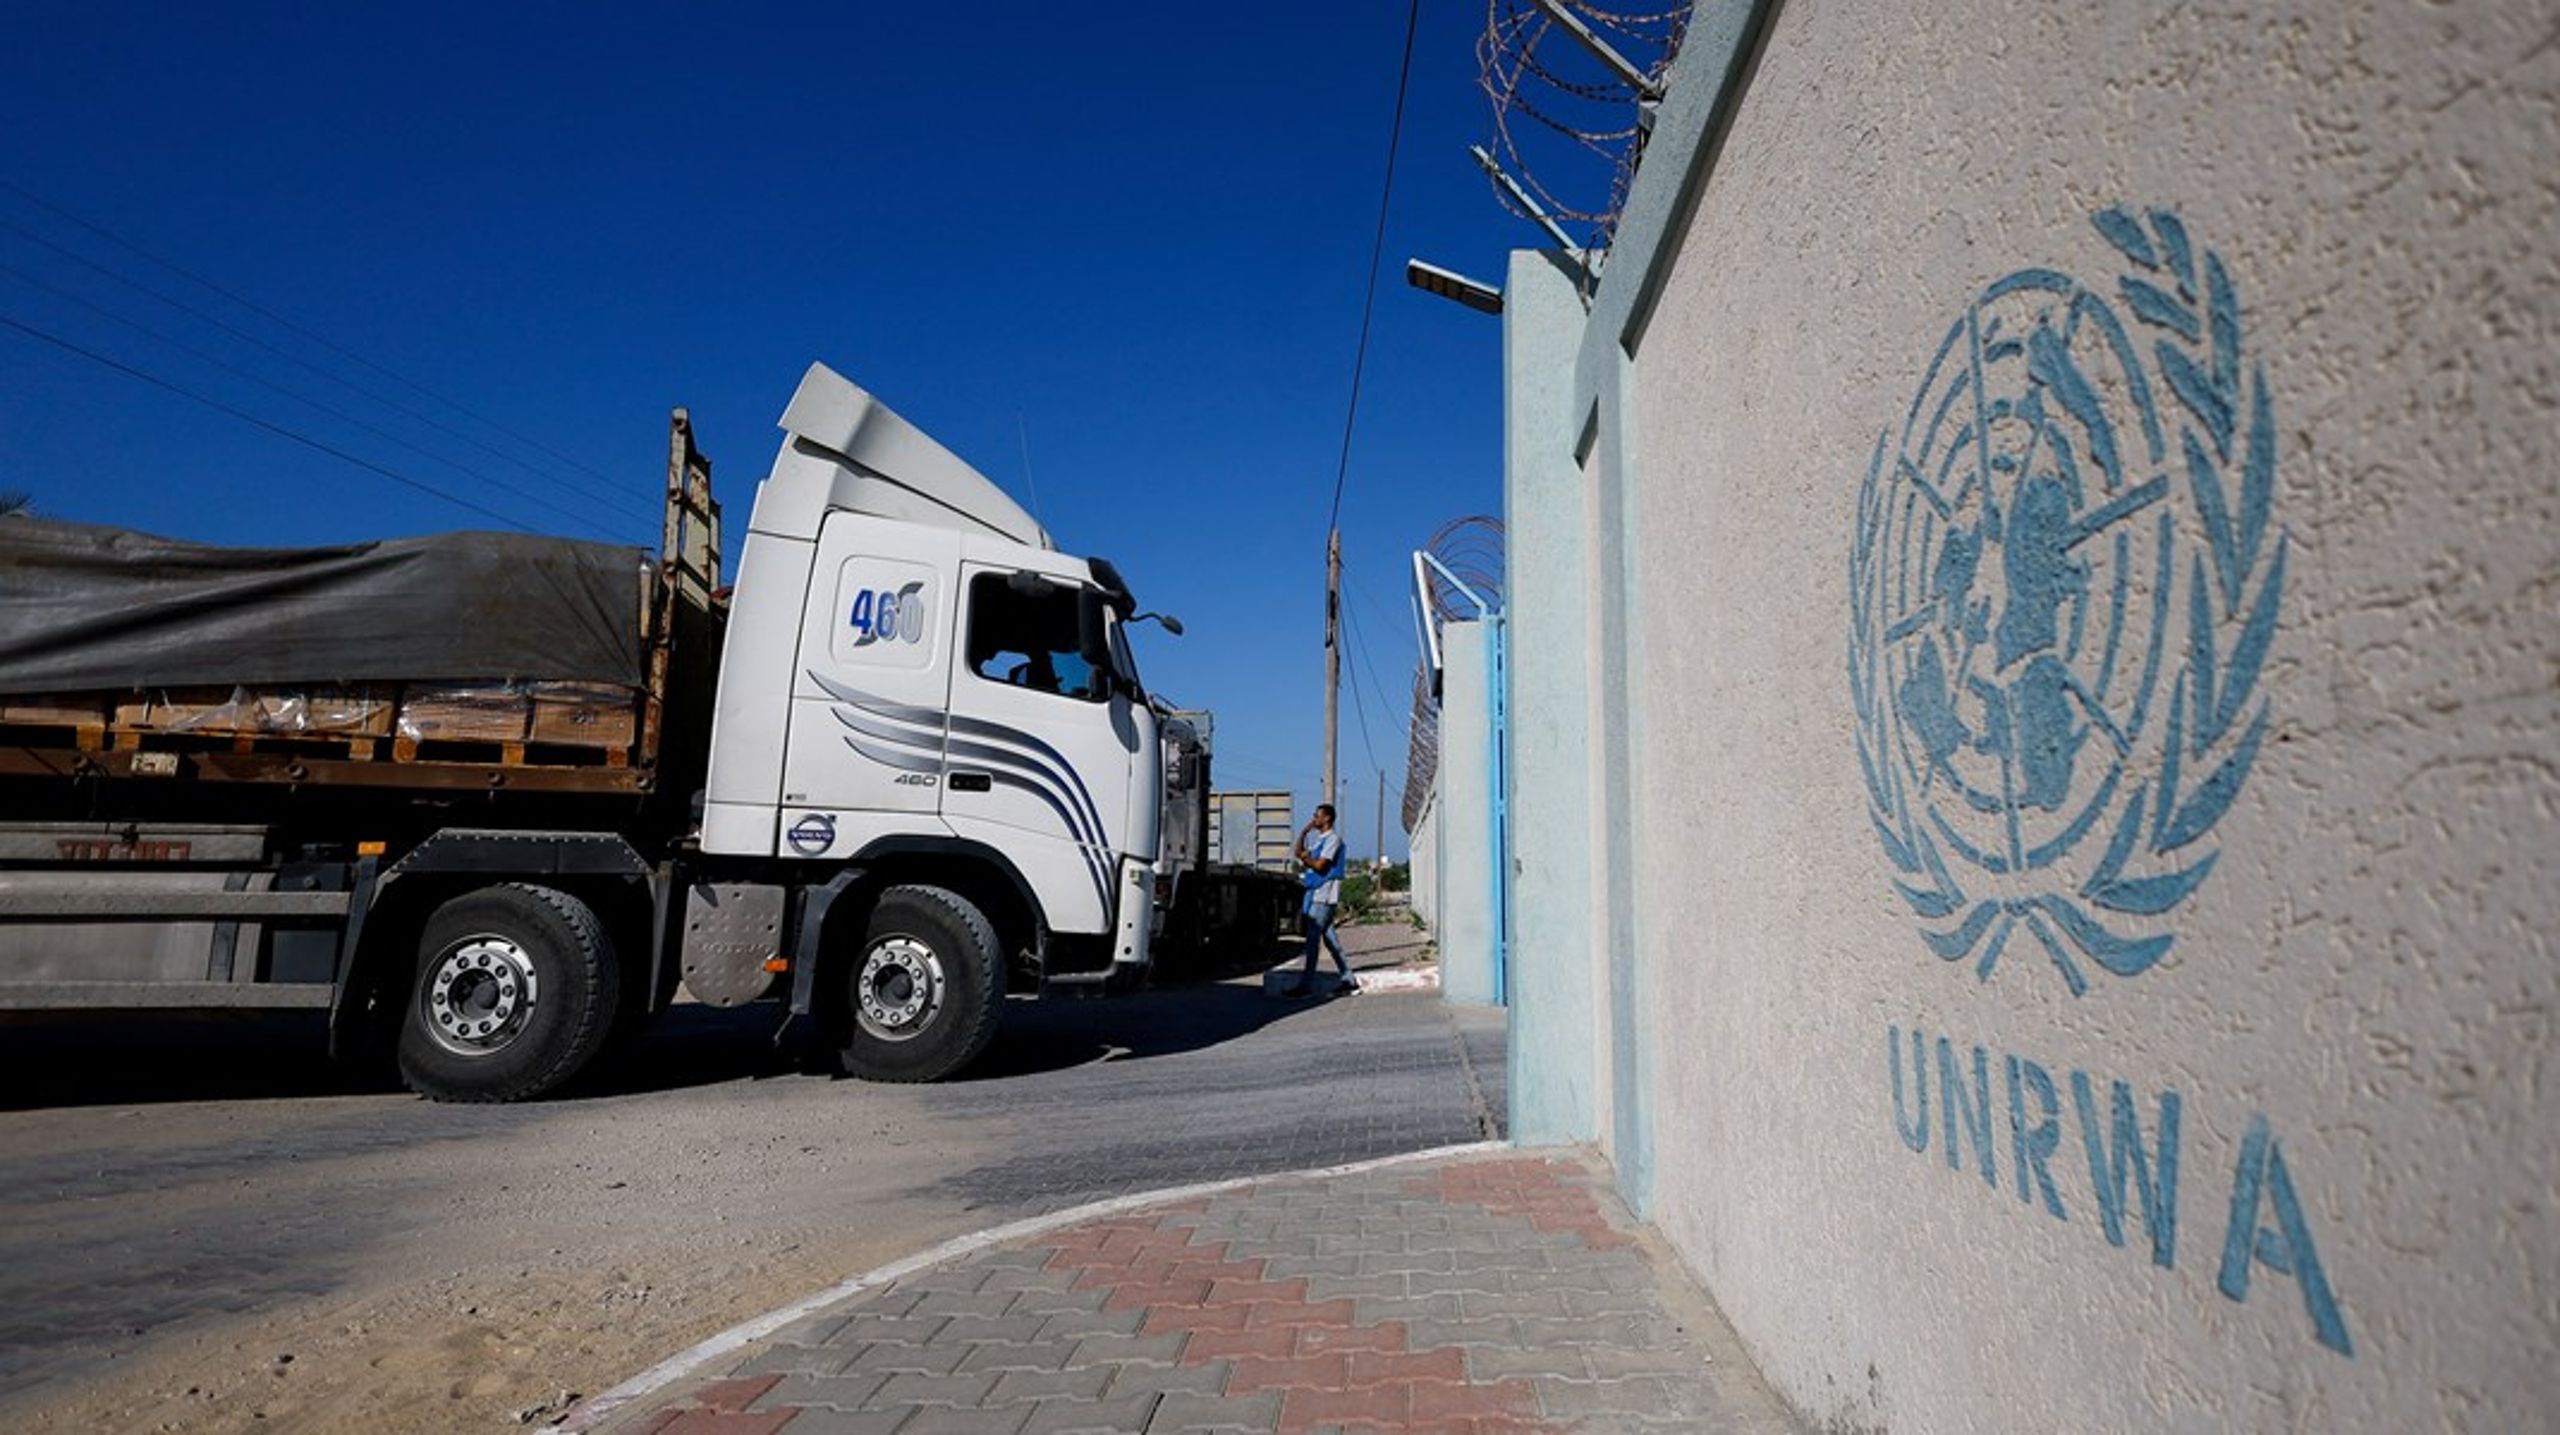 Selvom størstedelen af den danske udviklingsbistand til palæstinenserne er sat på pause, fortsætter den humanitære støtte. Det gælder blandt andet&nbsp;de danske bidrag til FN's hjælpeorganisation for palæstinensiske flygtninge (UNRWA).